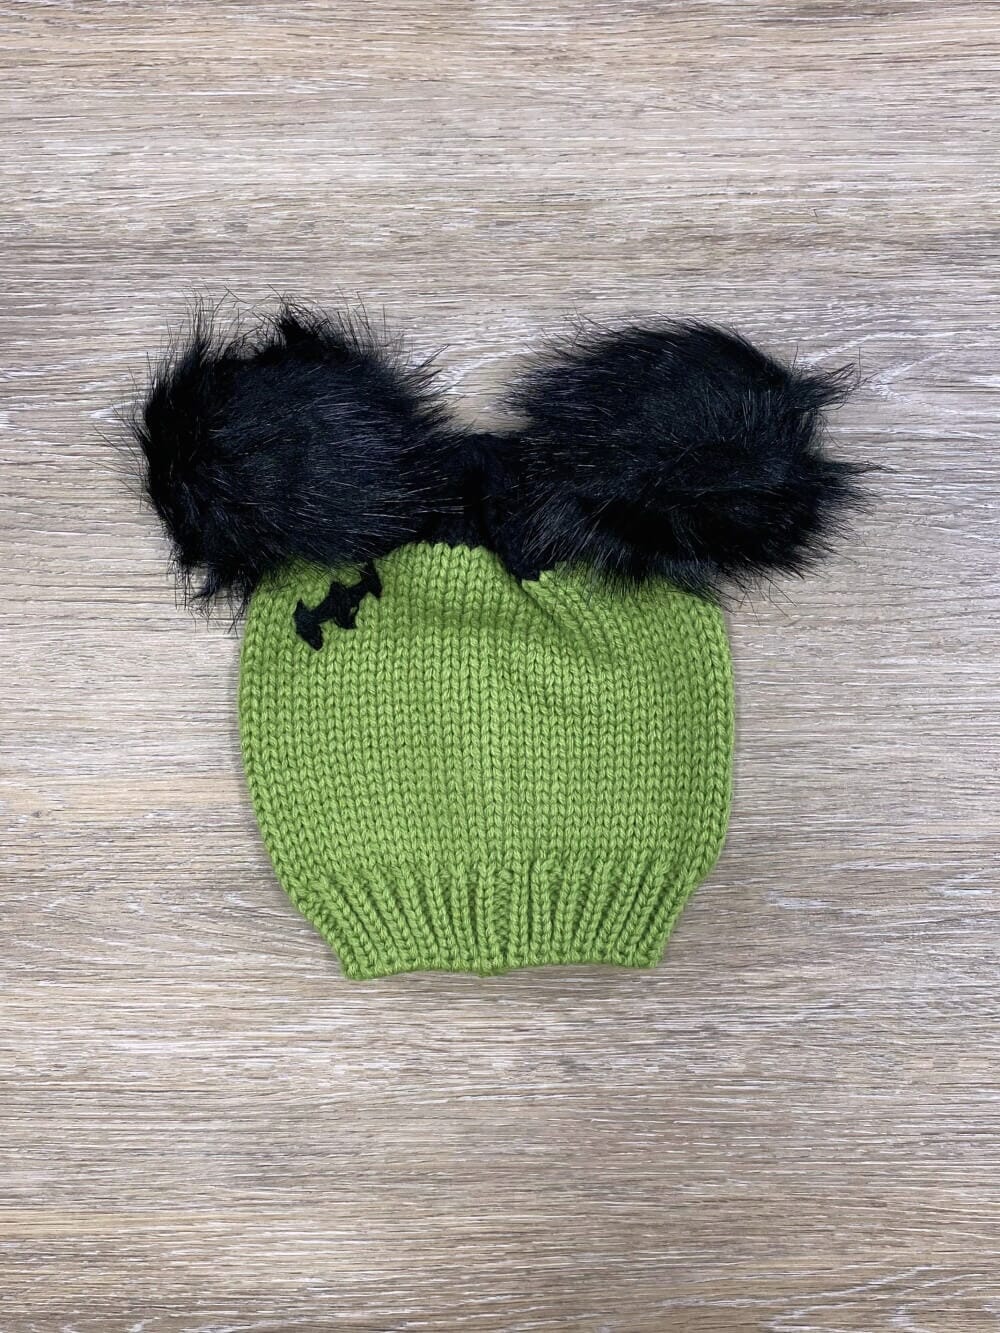 Green Monster Baby or Toddler Green & Black Pom Hat - Sydney So Sweet